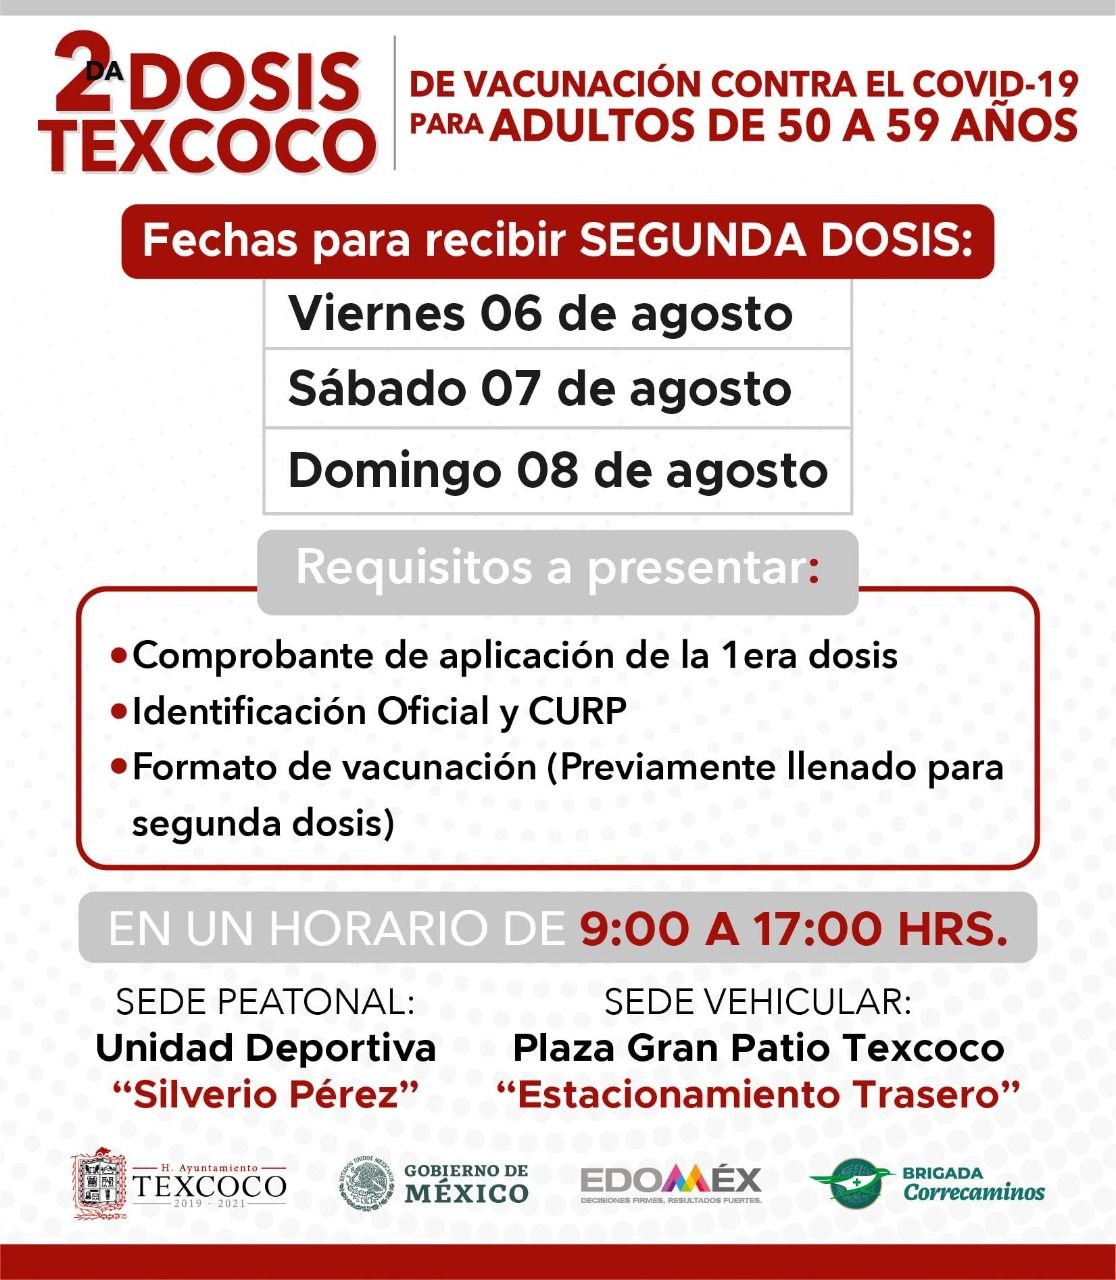 Del 6 al 8 de agosto se aplicará en Texcoco únicamente la segunda dosis de vacuna contra la Covid-19 a adultos de 50 a 59 años
